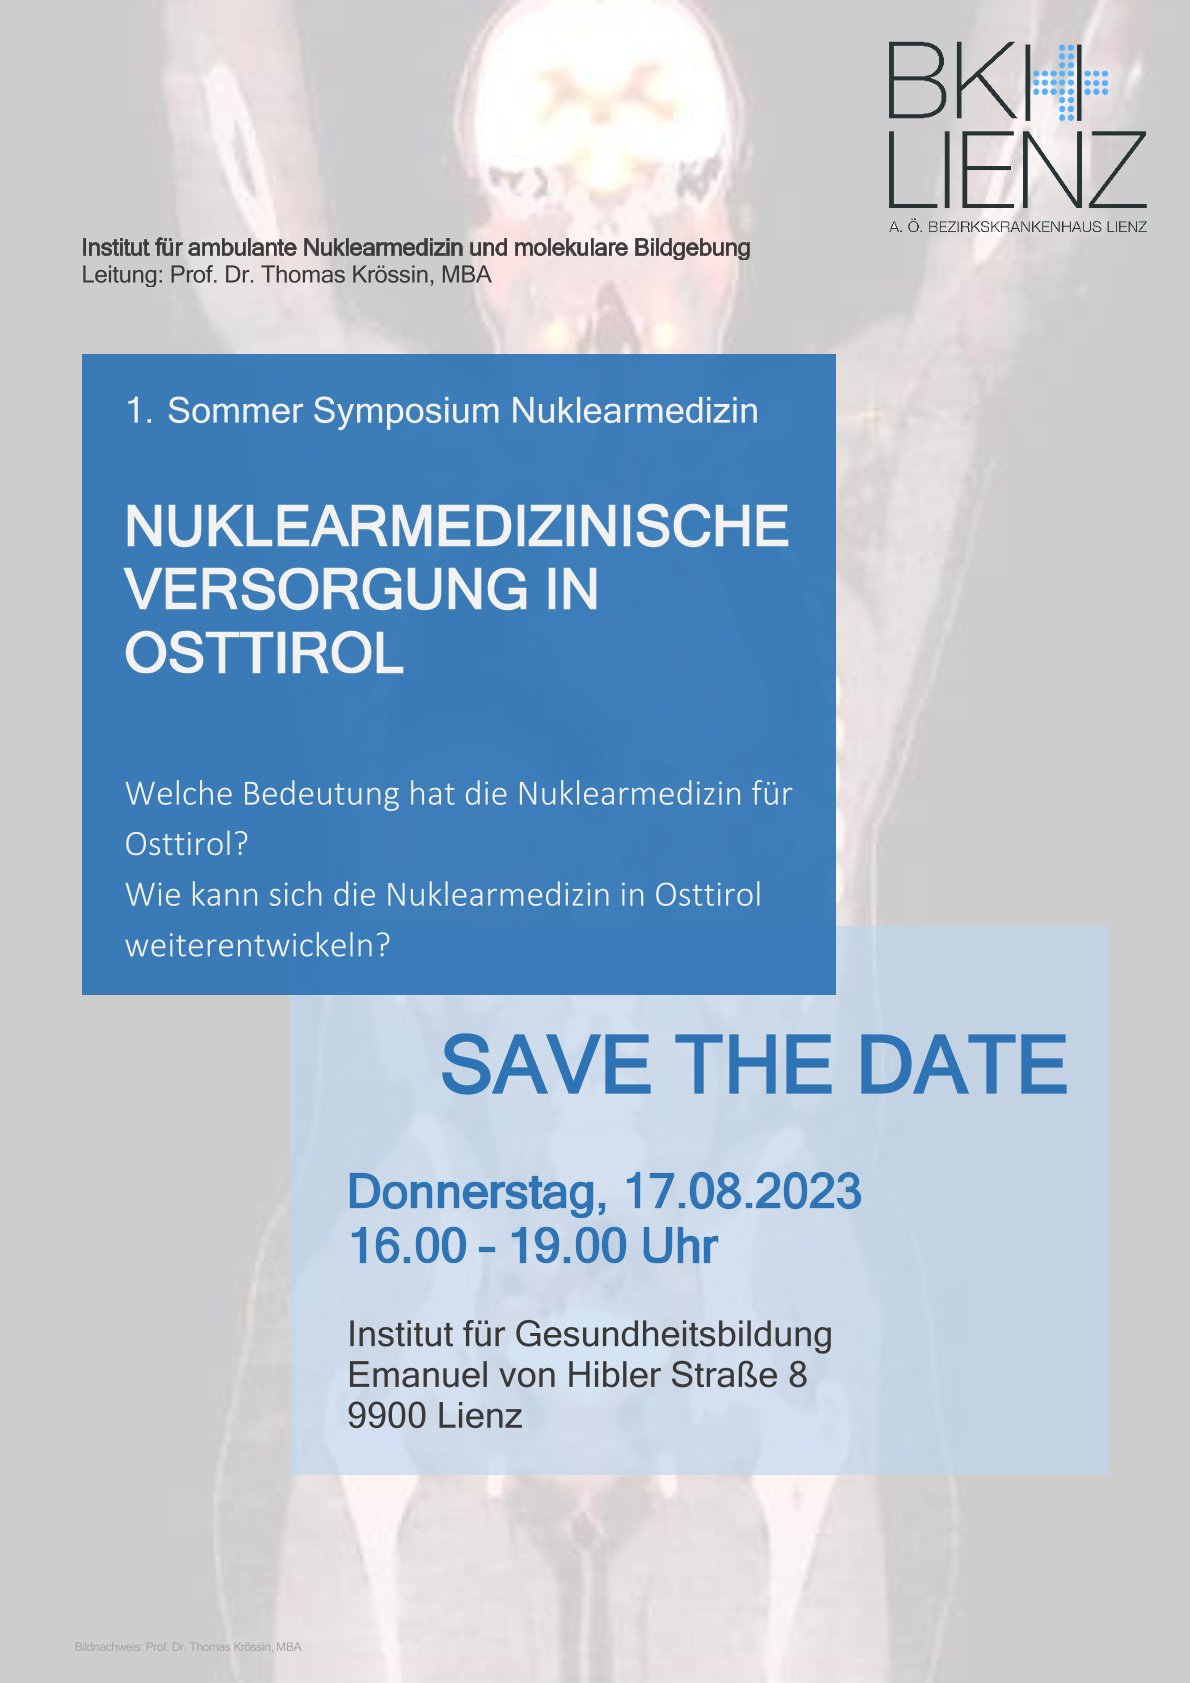 Sommer Symposium nuklearmedizinische Versorgung in Osttirol SavetheDate 17.08.2023.jpg